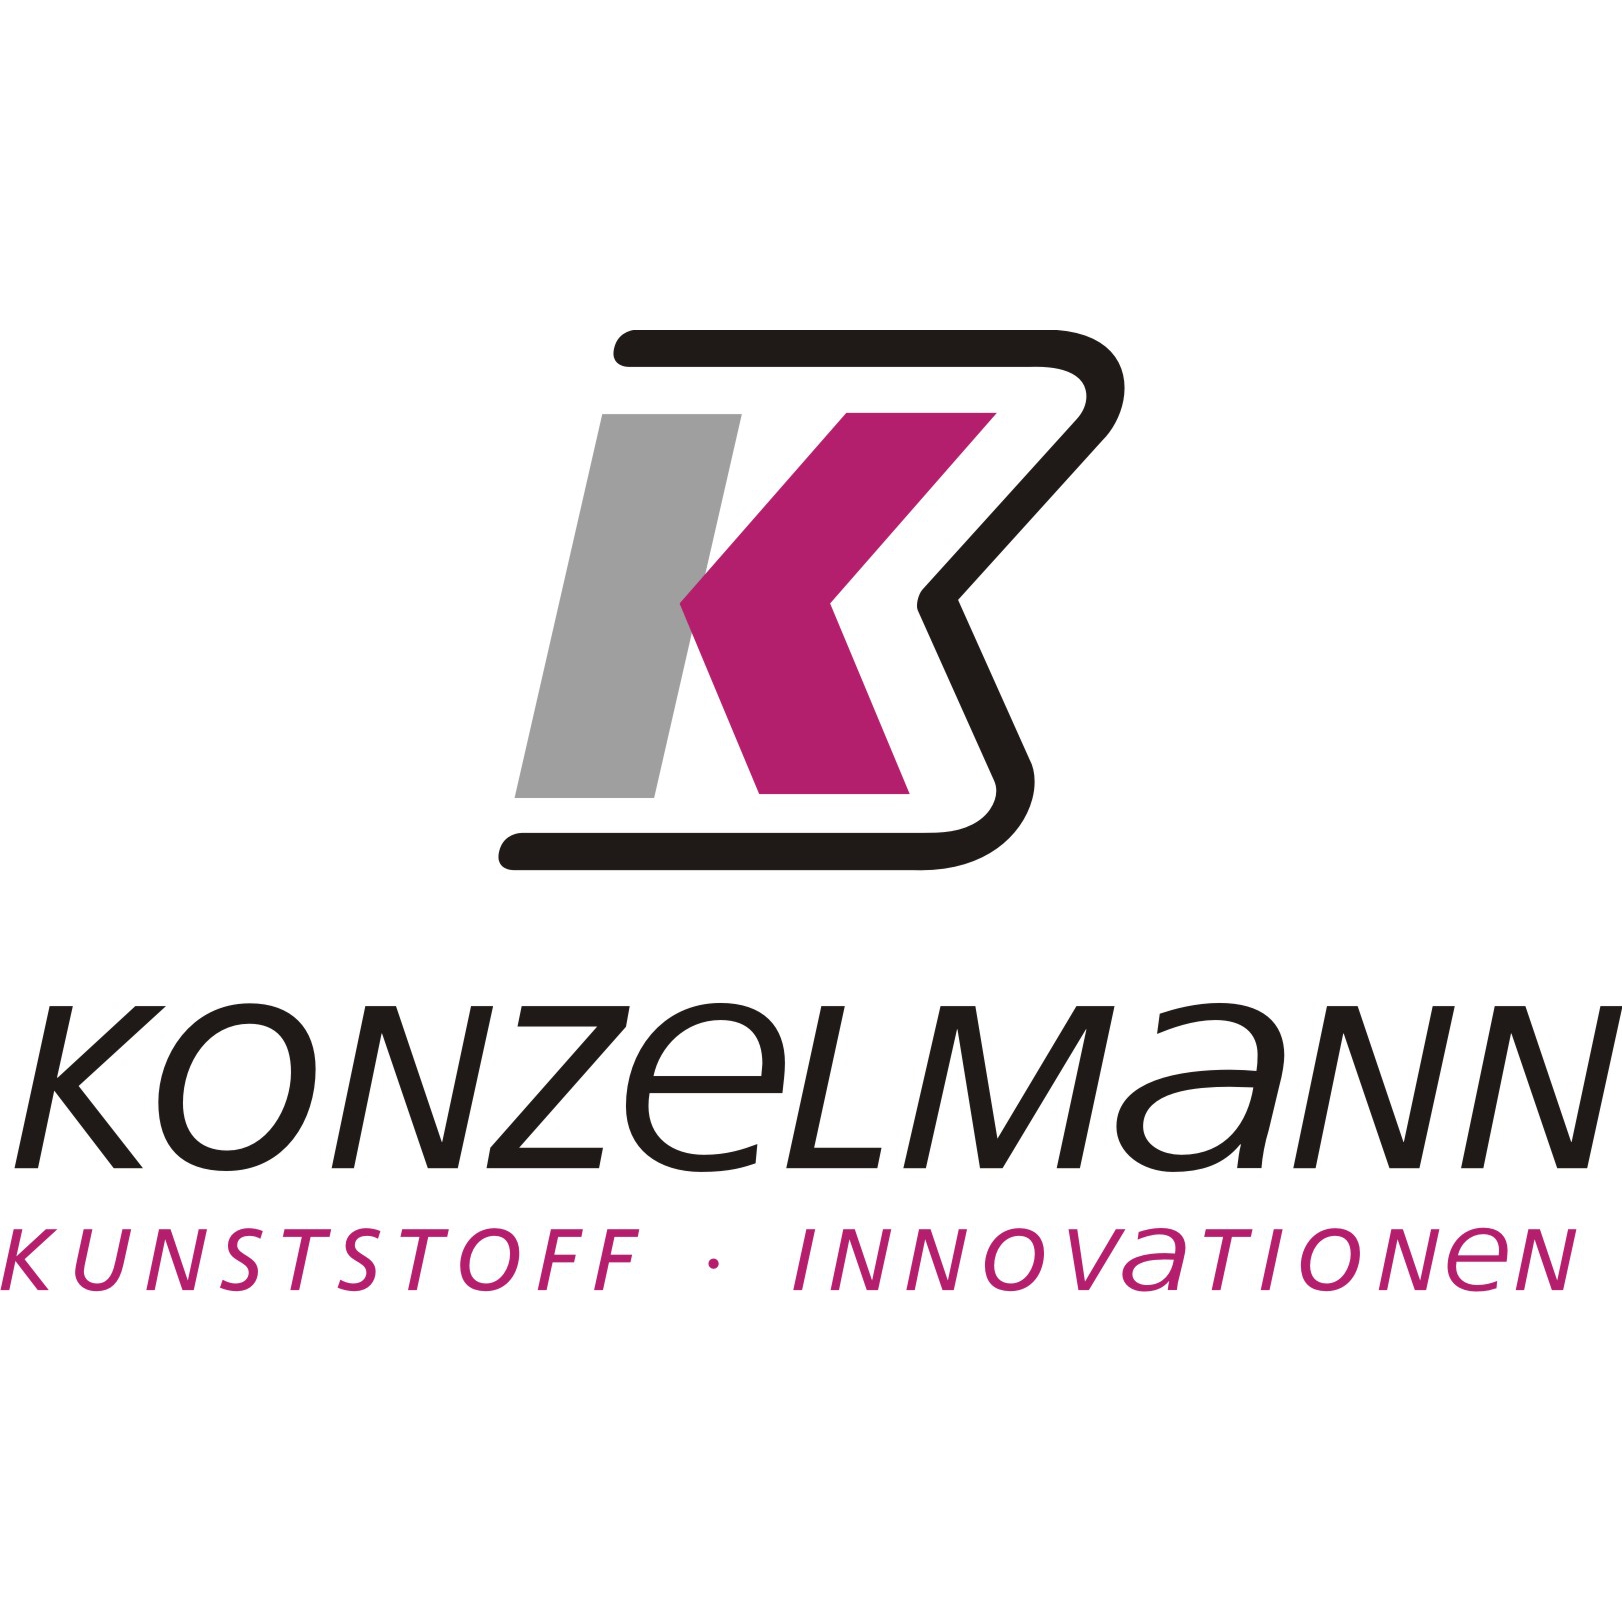 Konzelmann GmbH